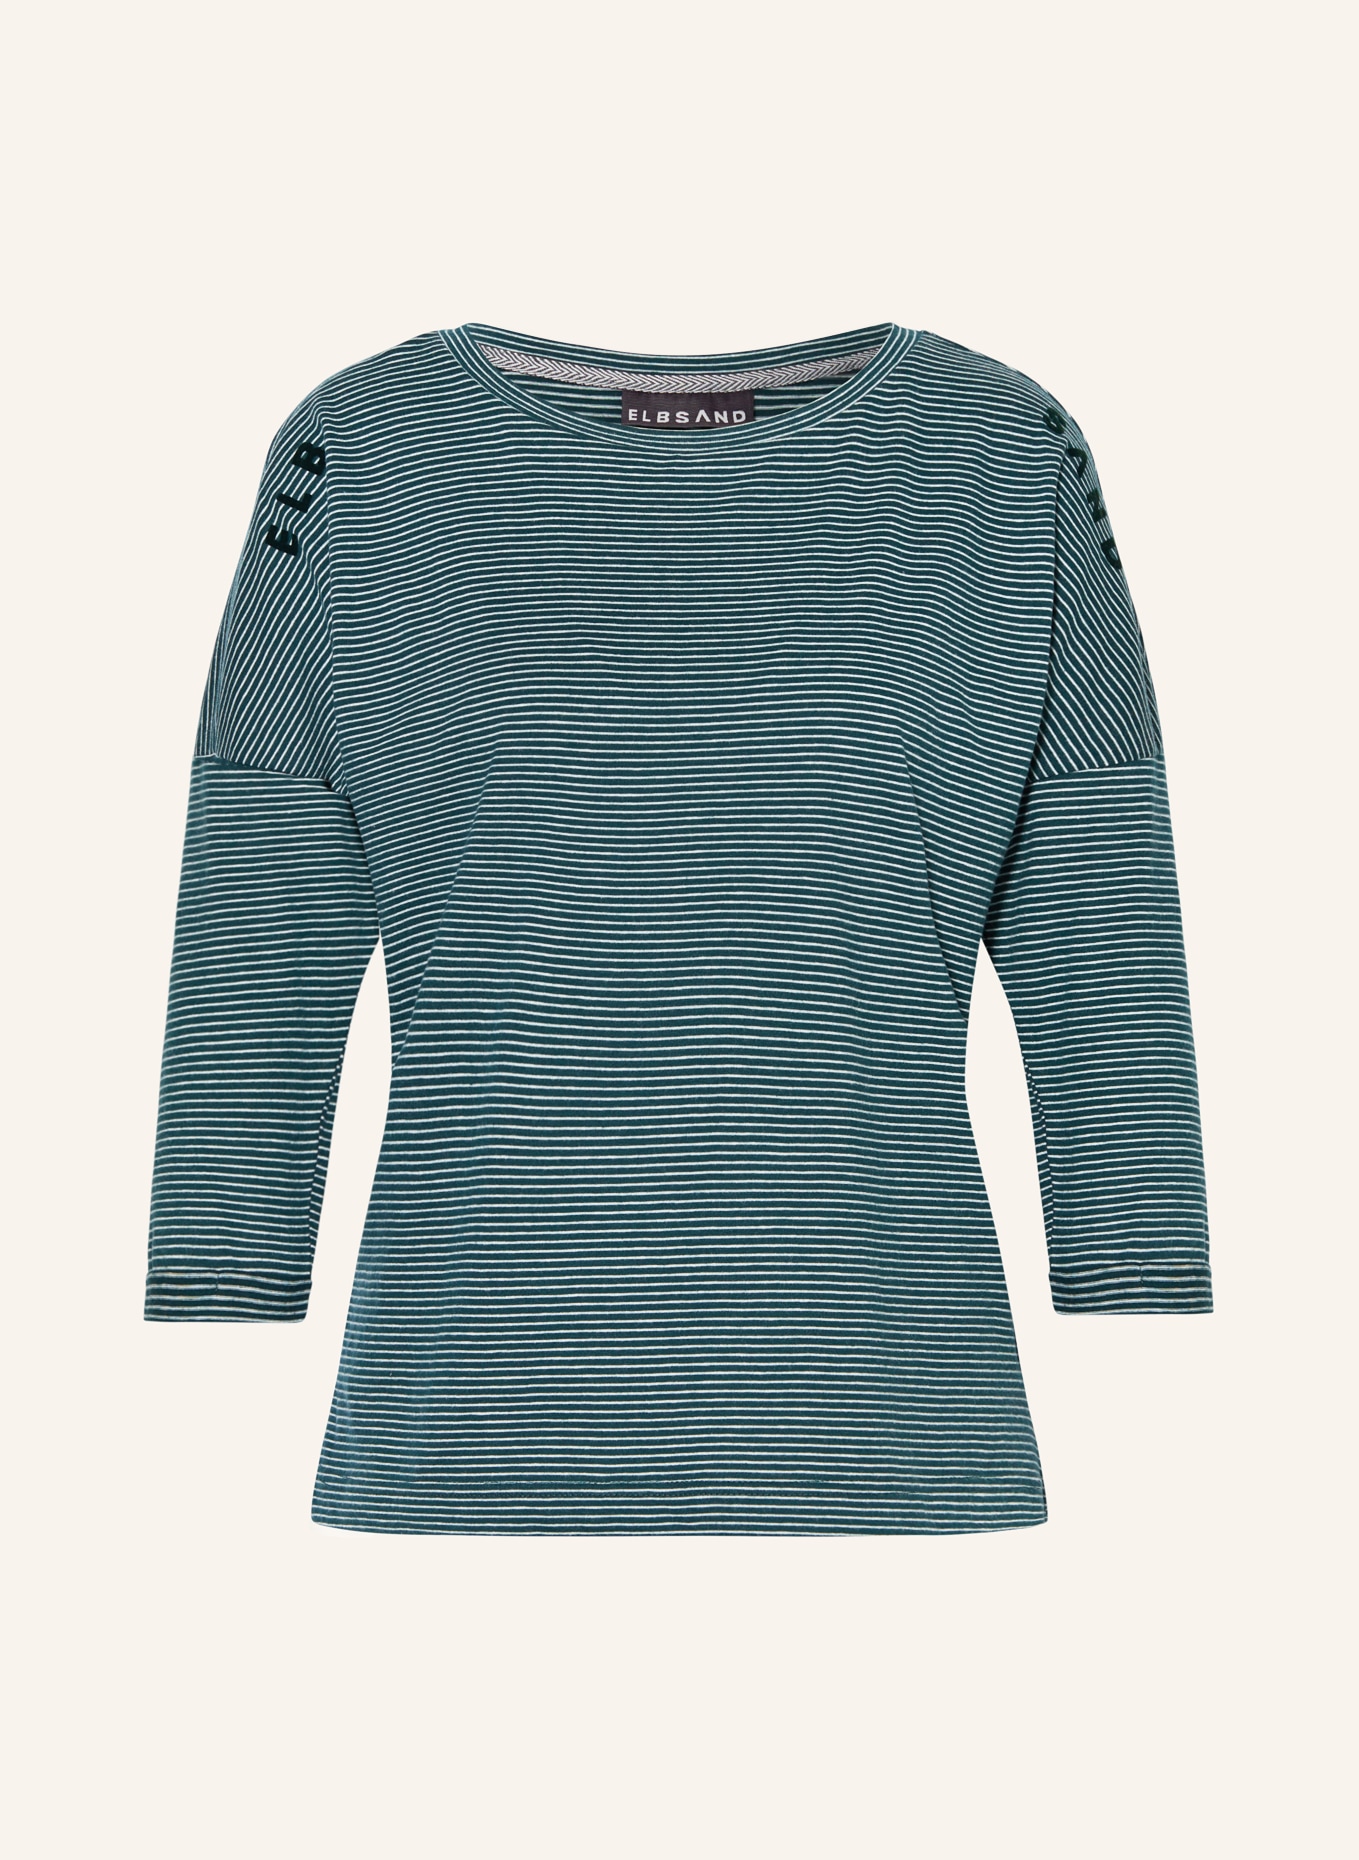 ELBSAND Shirt VEERA mit 3/4-Arm, Farbe: PETROL/ WEISS (Bild 1)